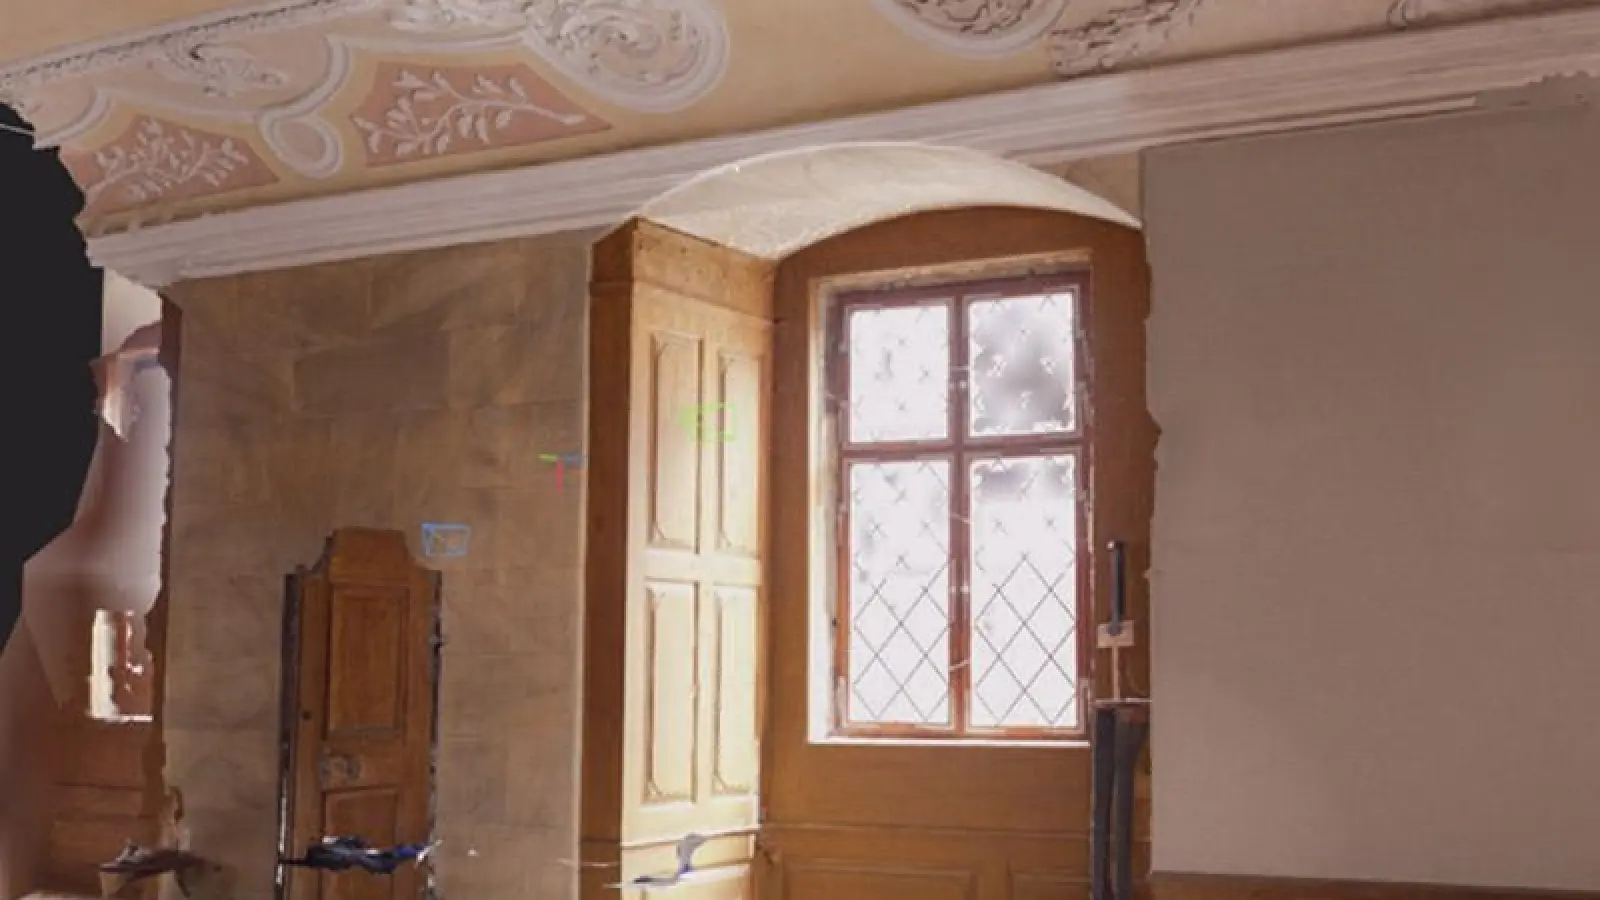 3D-Rekonstruktion der historischen Kemenate in Schloss Thurnau (Foto: red)